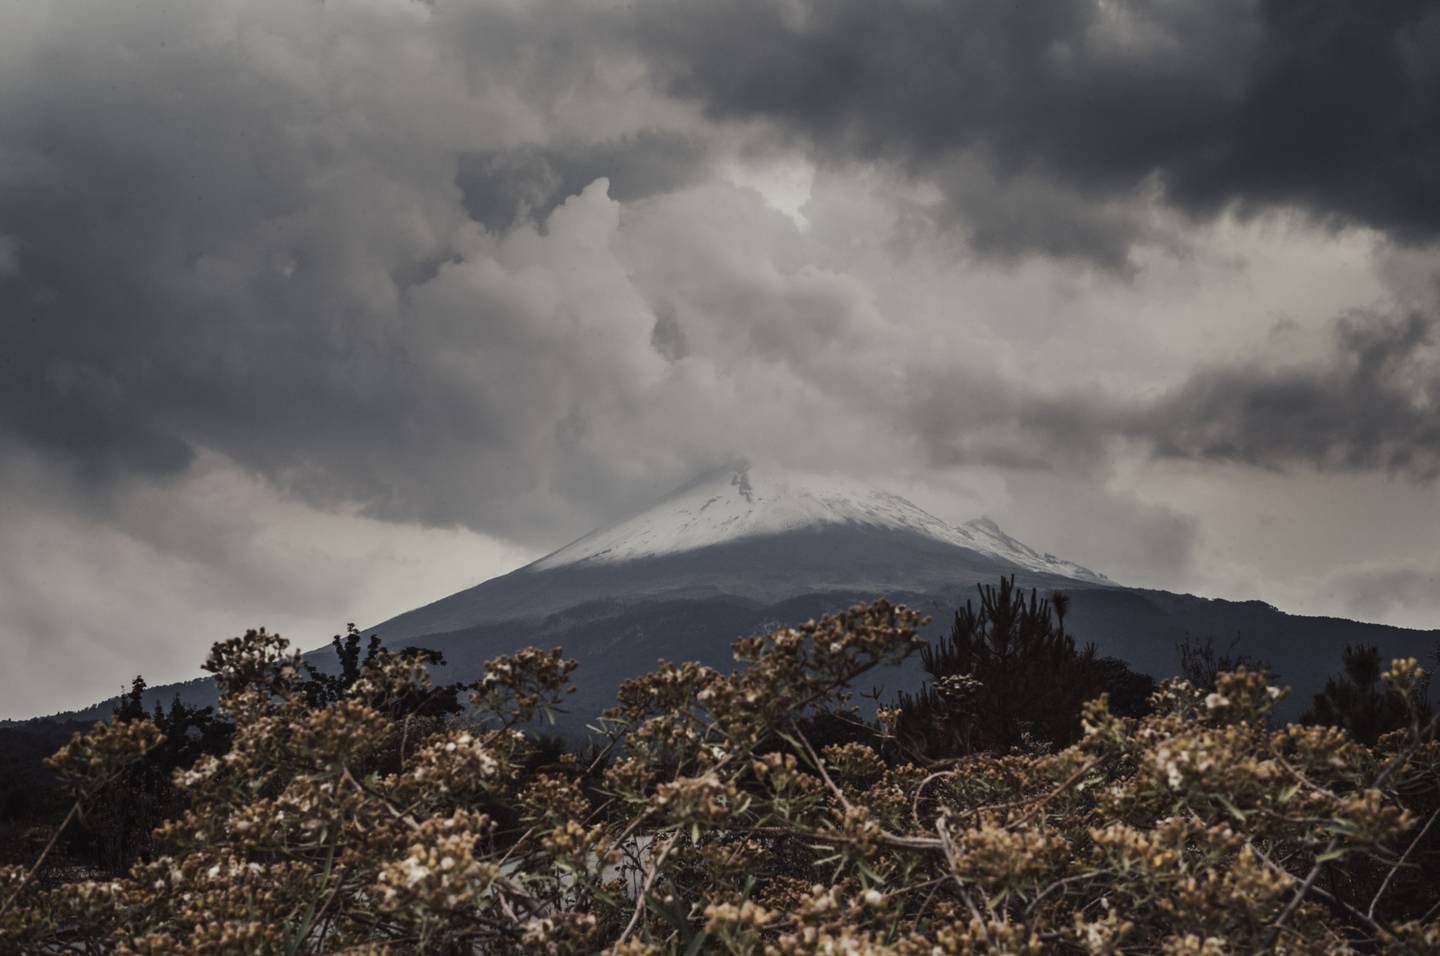 La alerta del Volcán Popocatépetl se elevó tras el aumento de actividad. La autoridad ordenó hacer verificaciones en las rutas de evacuación y refugios en caso de emergencia, dijo el domingo el titular de la autoridad civil del país.